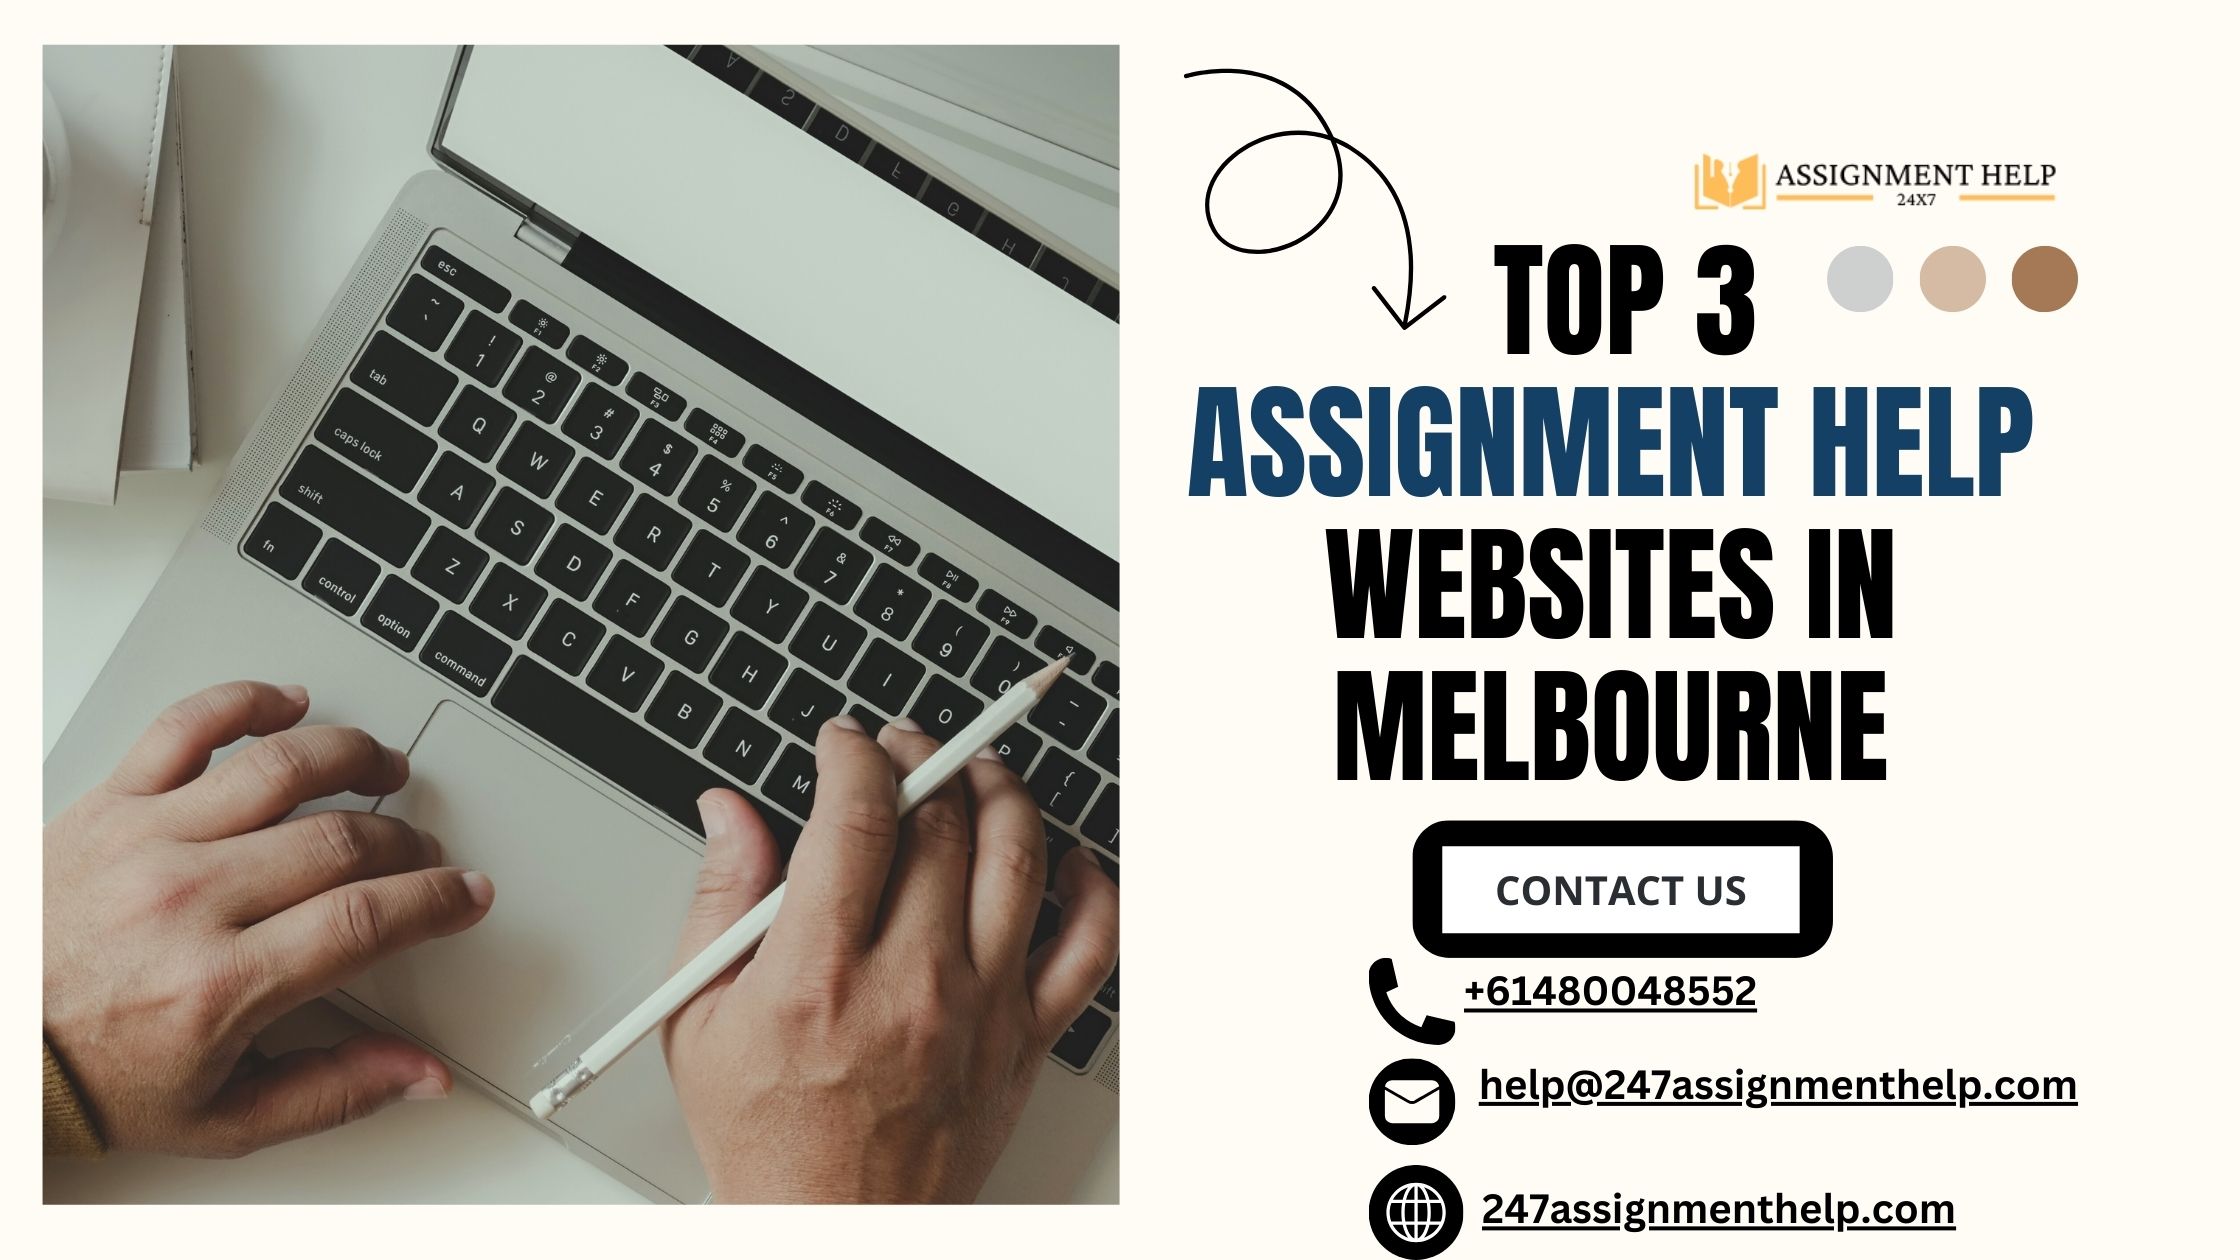 Top 3 Assignment Help Websites in Melbourne